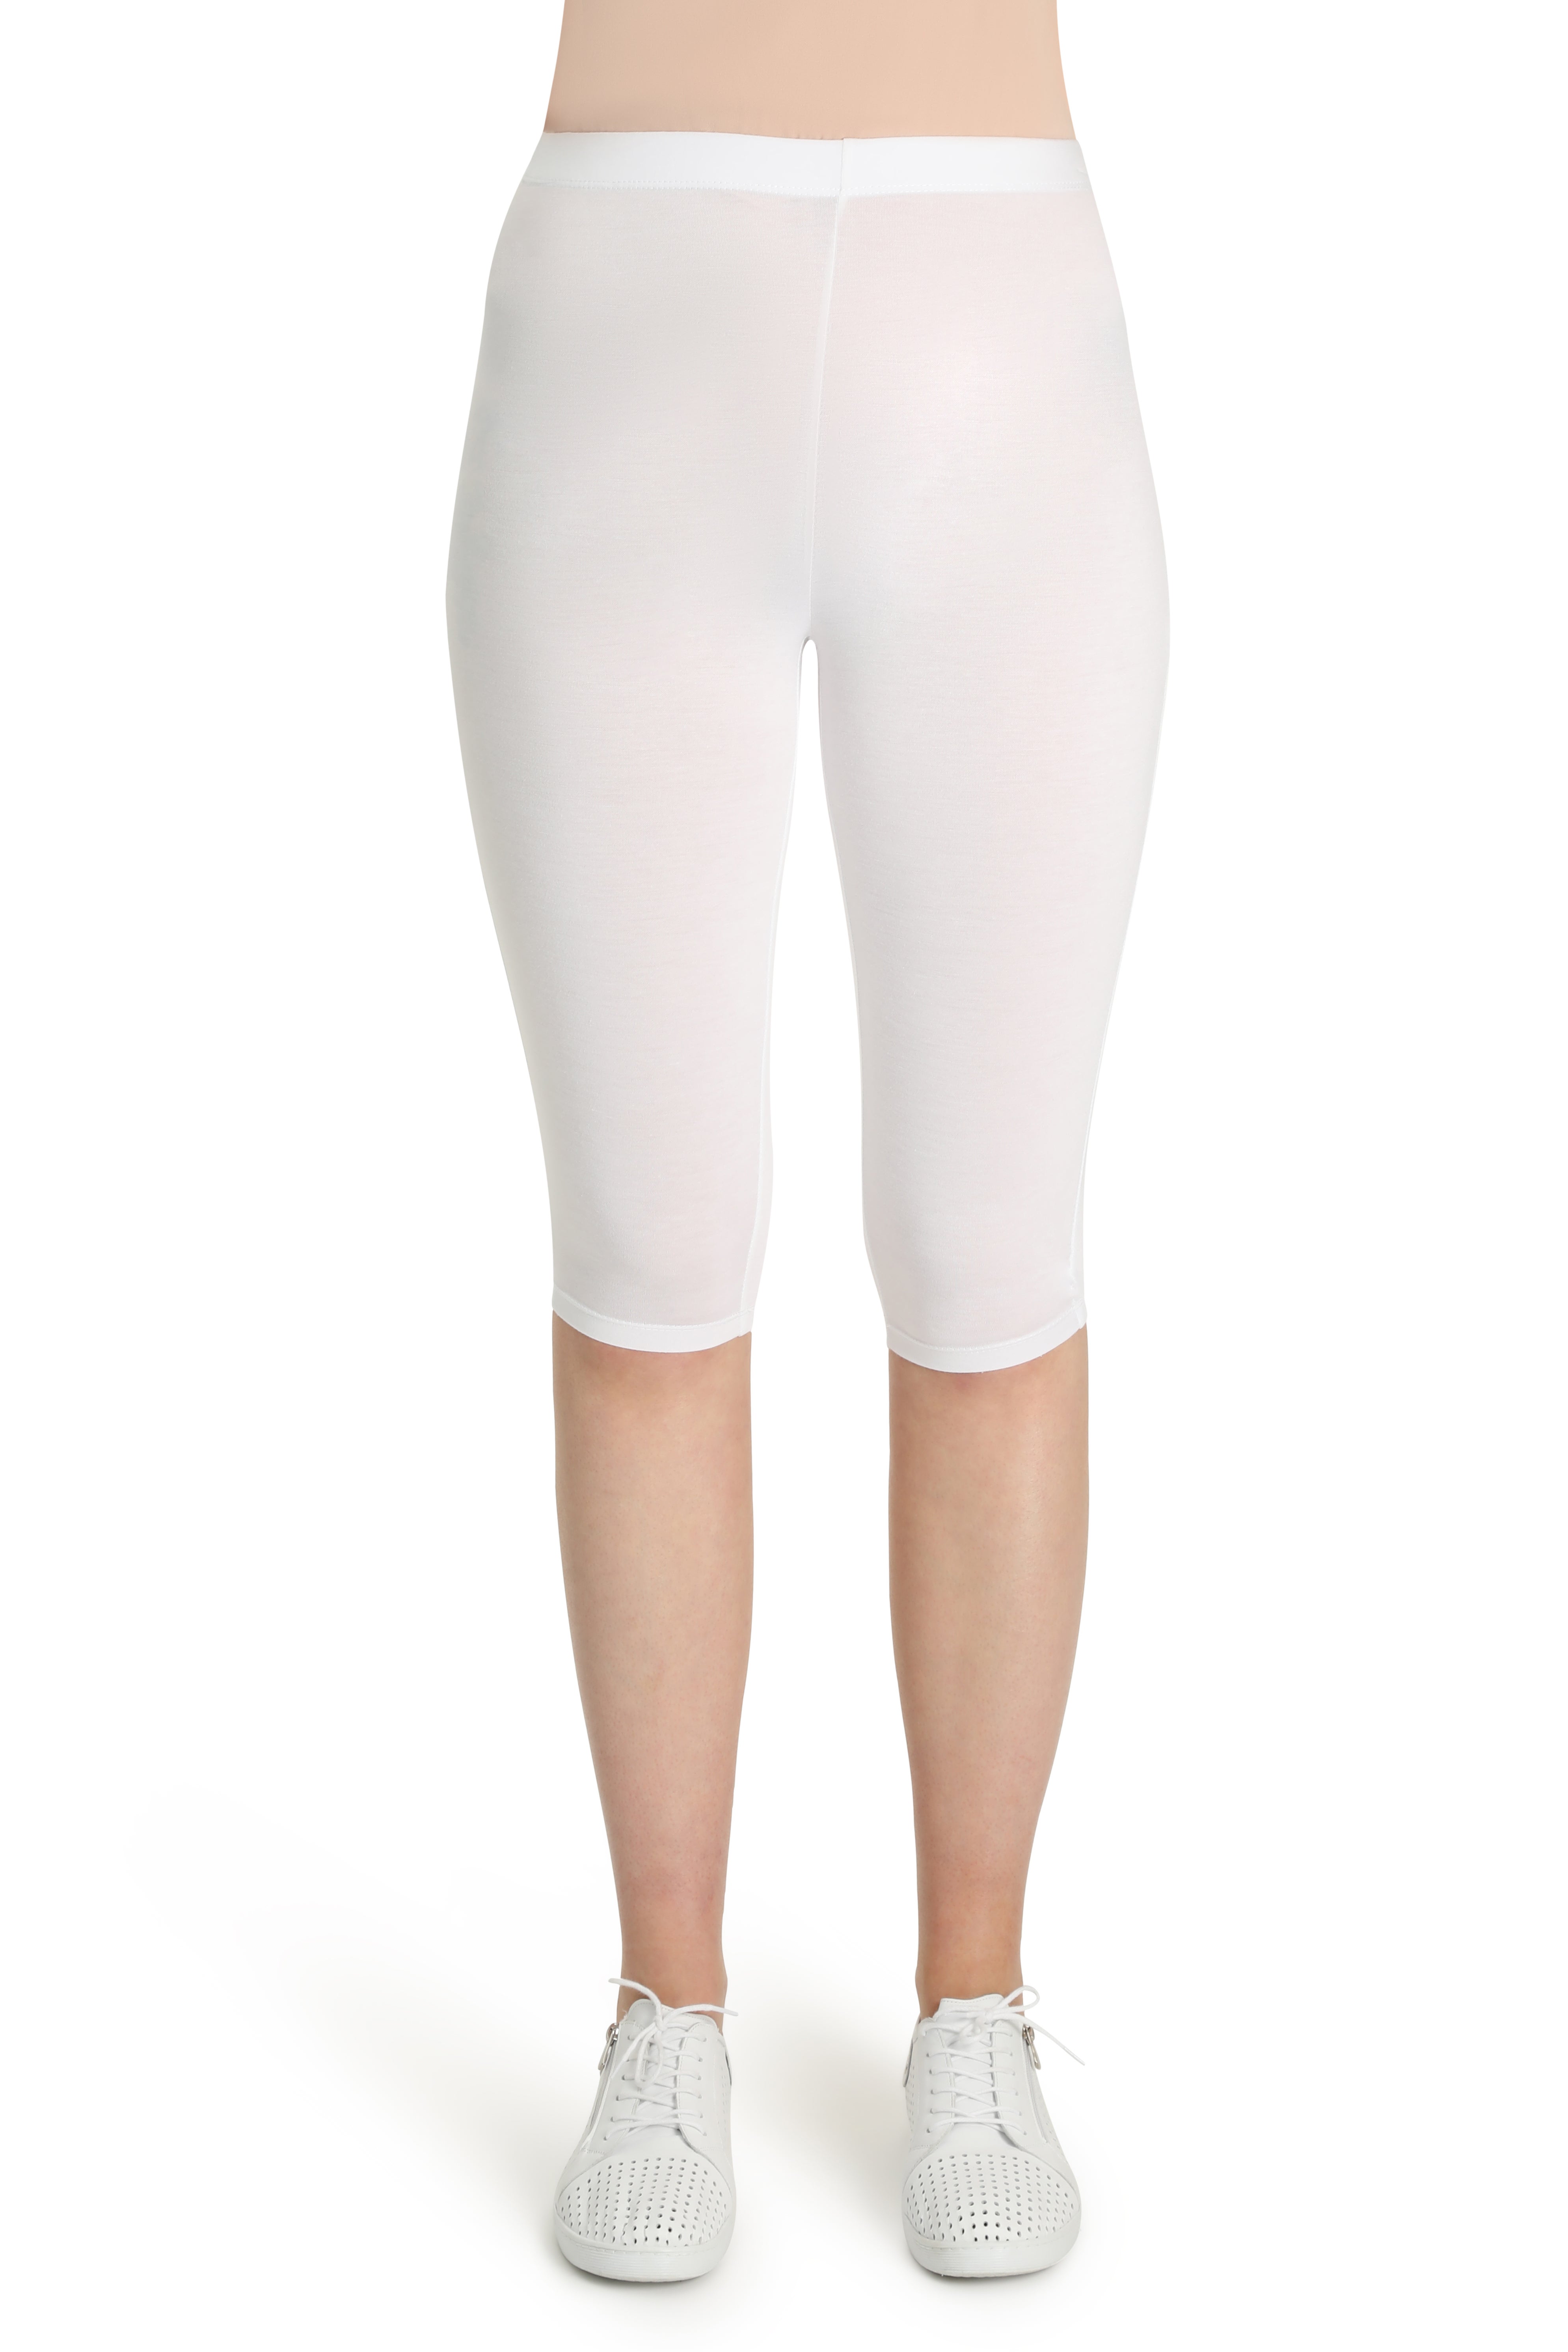 below knee legging plain pull on elastic waistband tl 64cm white 1 3382tt